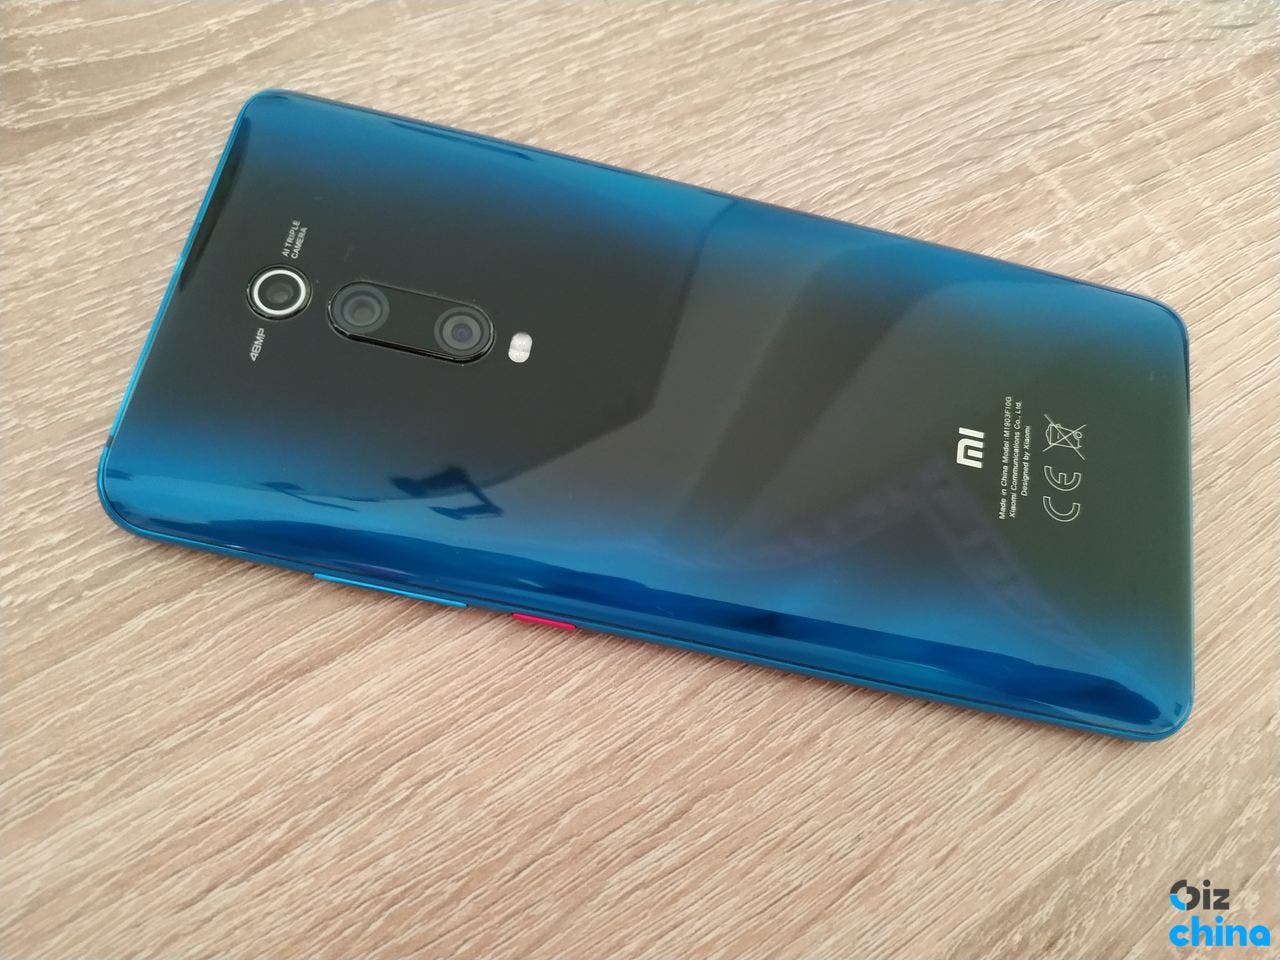 Xiaomi Mi 9T